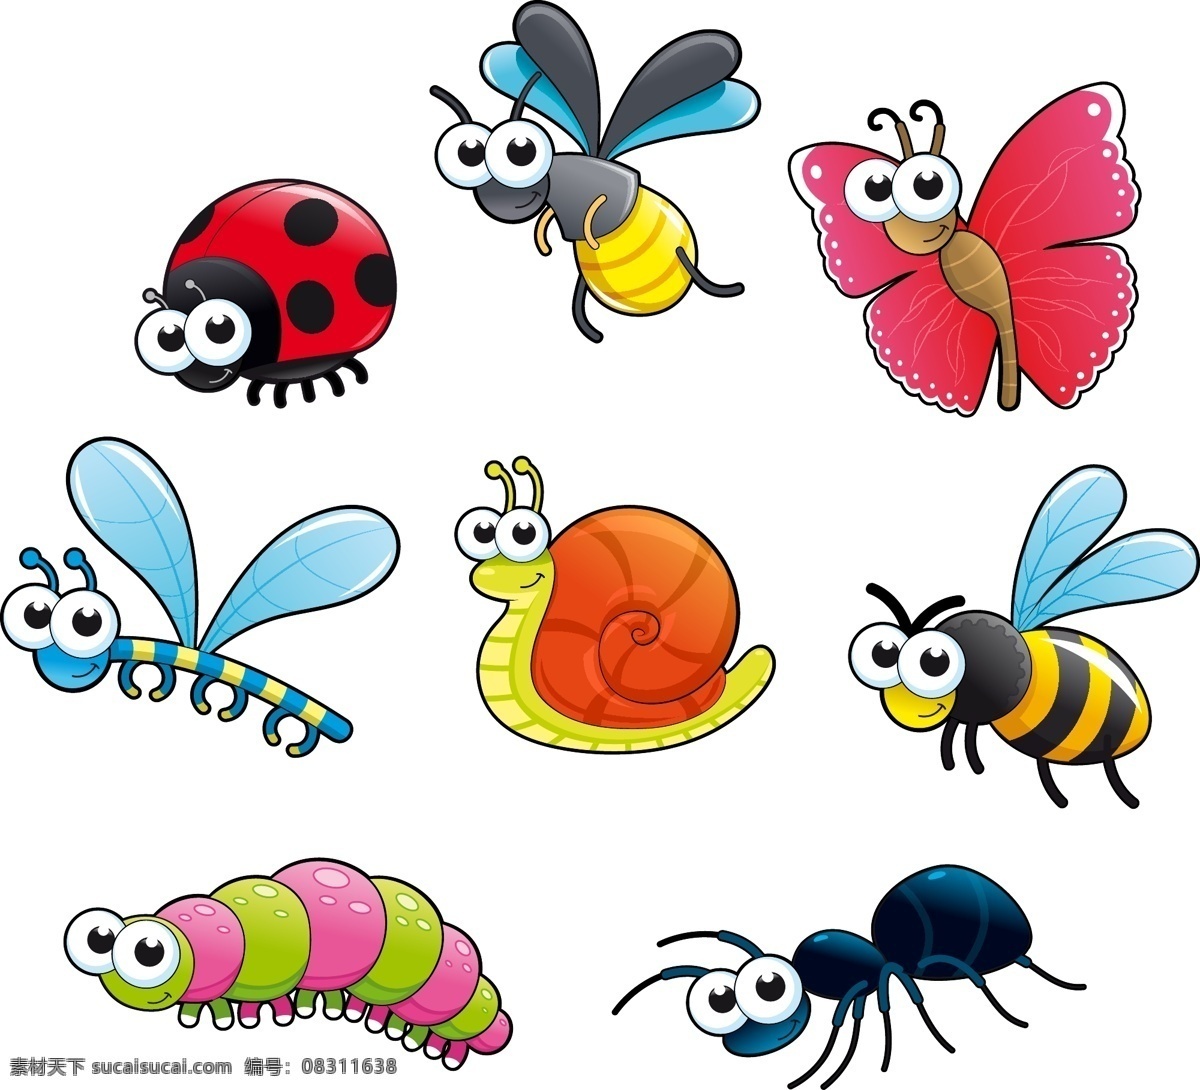 彩色 可爱 卡通 春天 动物 蝴蝶 春季 瓢虫 蜻蜓 蜗牛 蚂蚁 毛毛虫 蜜蜂